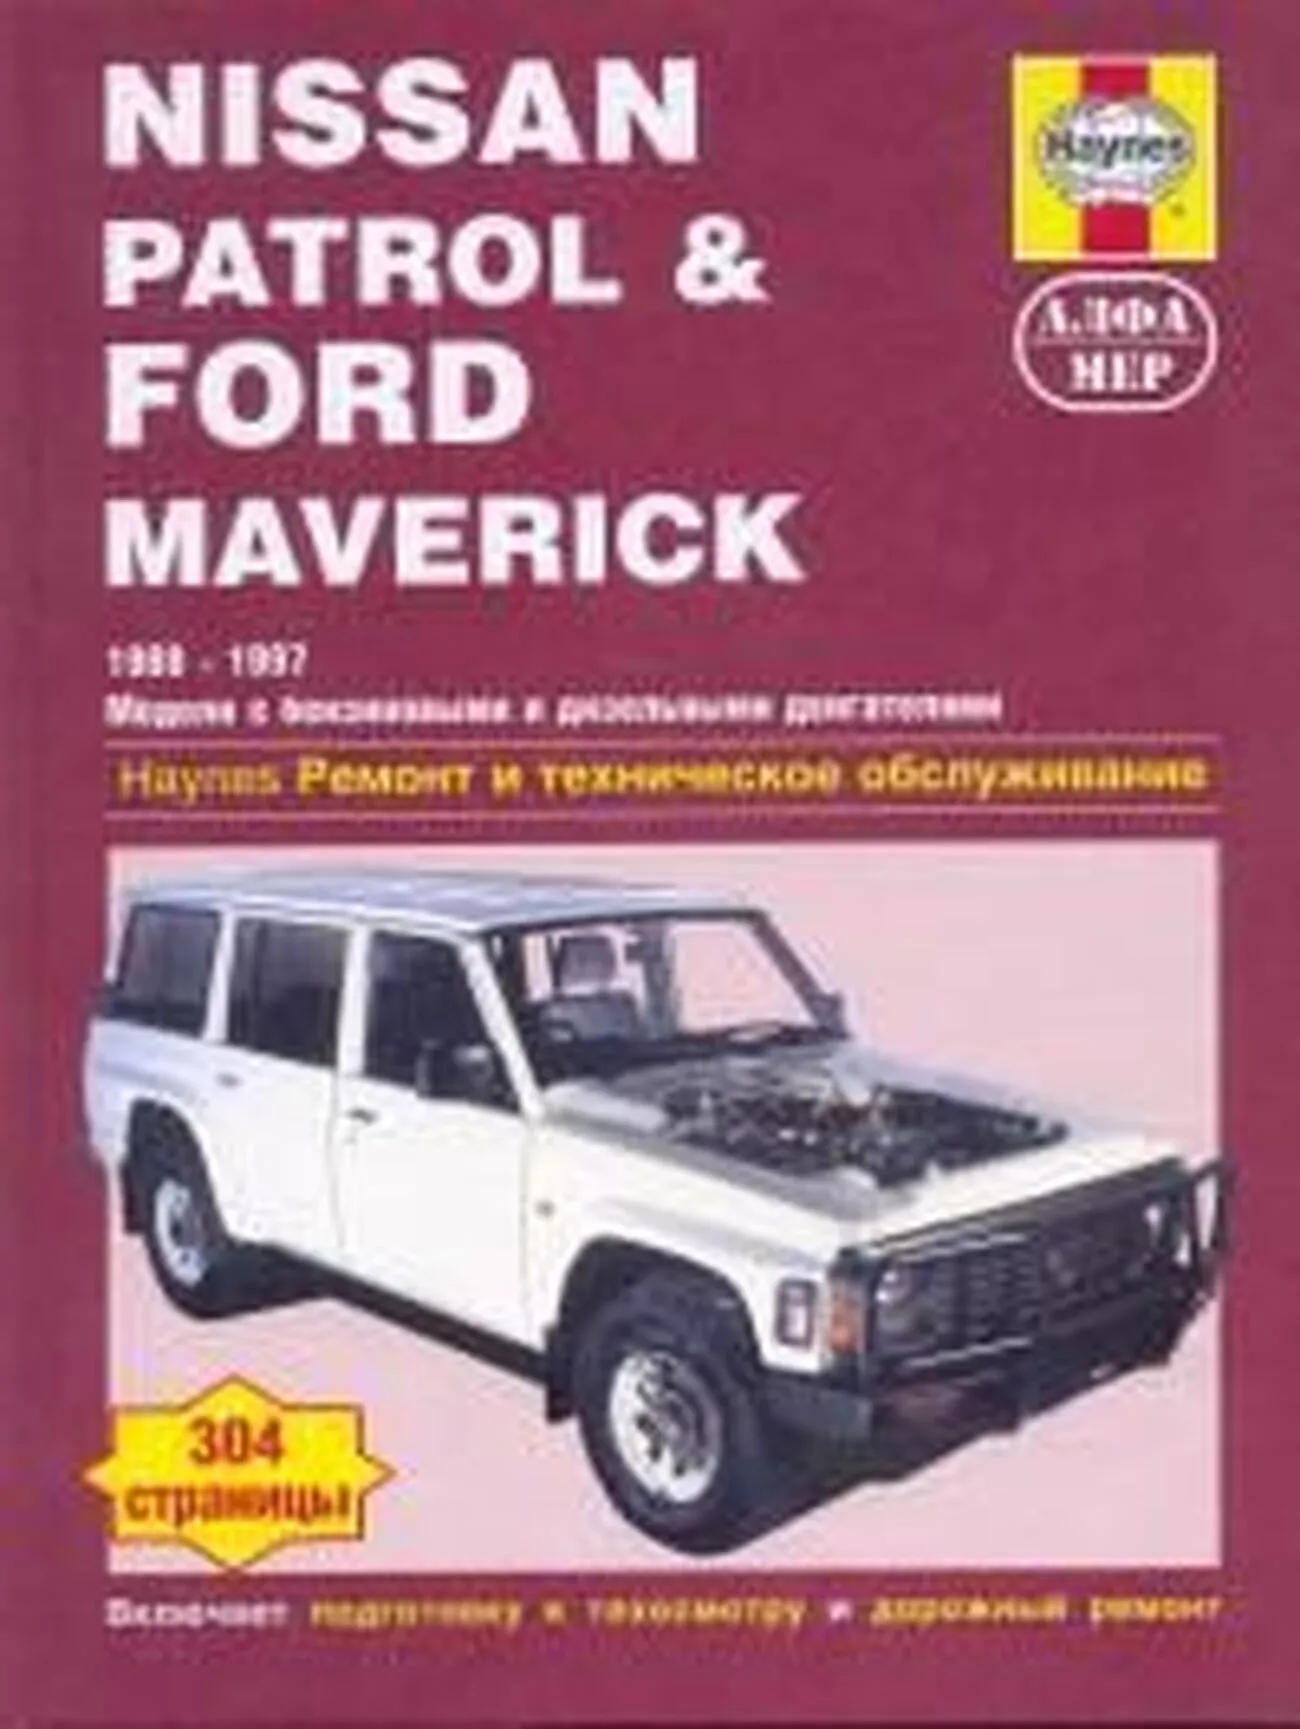 Книга: FORD MAVERICK / NISSAN PATROL (б , д) 1988-1997 г.в., рем., экспл., то | Алфамер Паблишинг